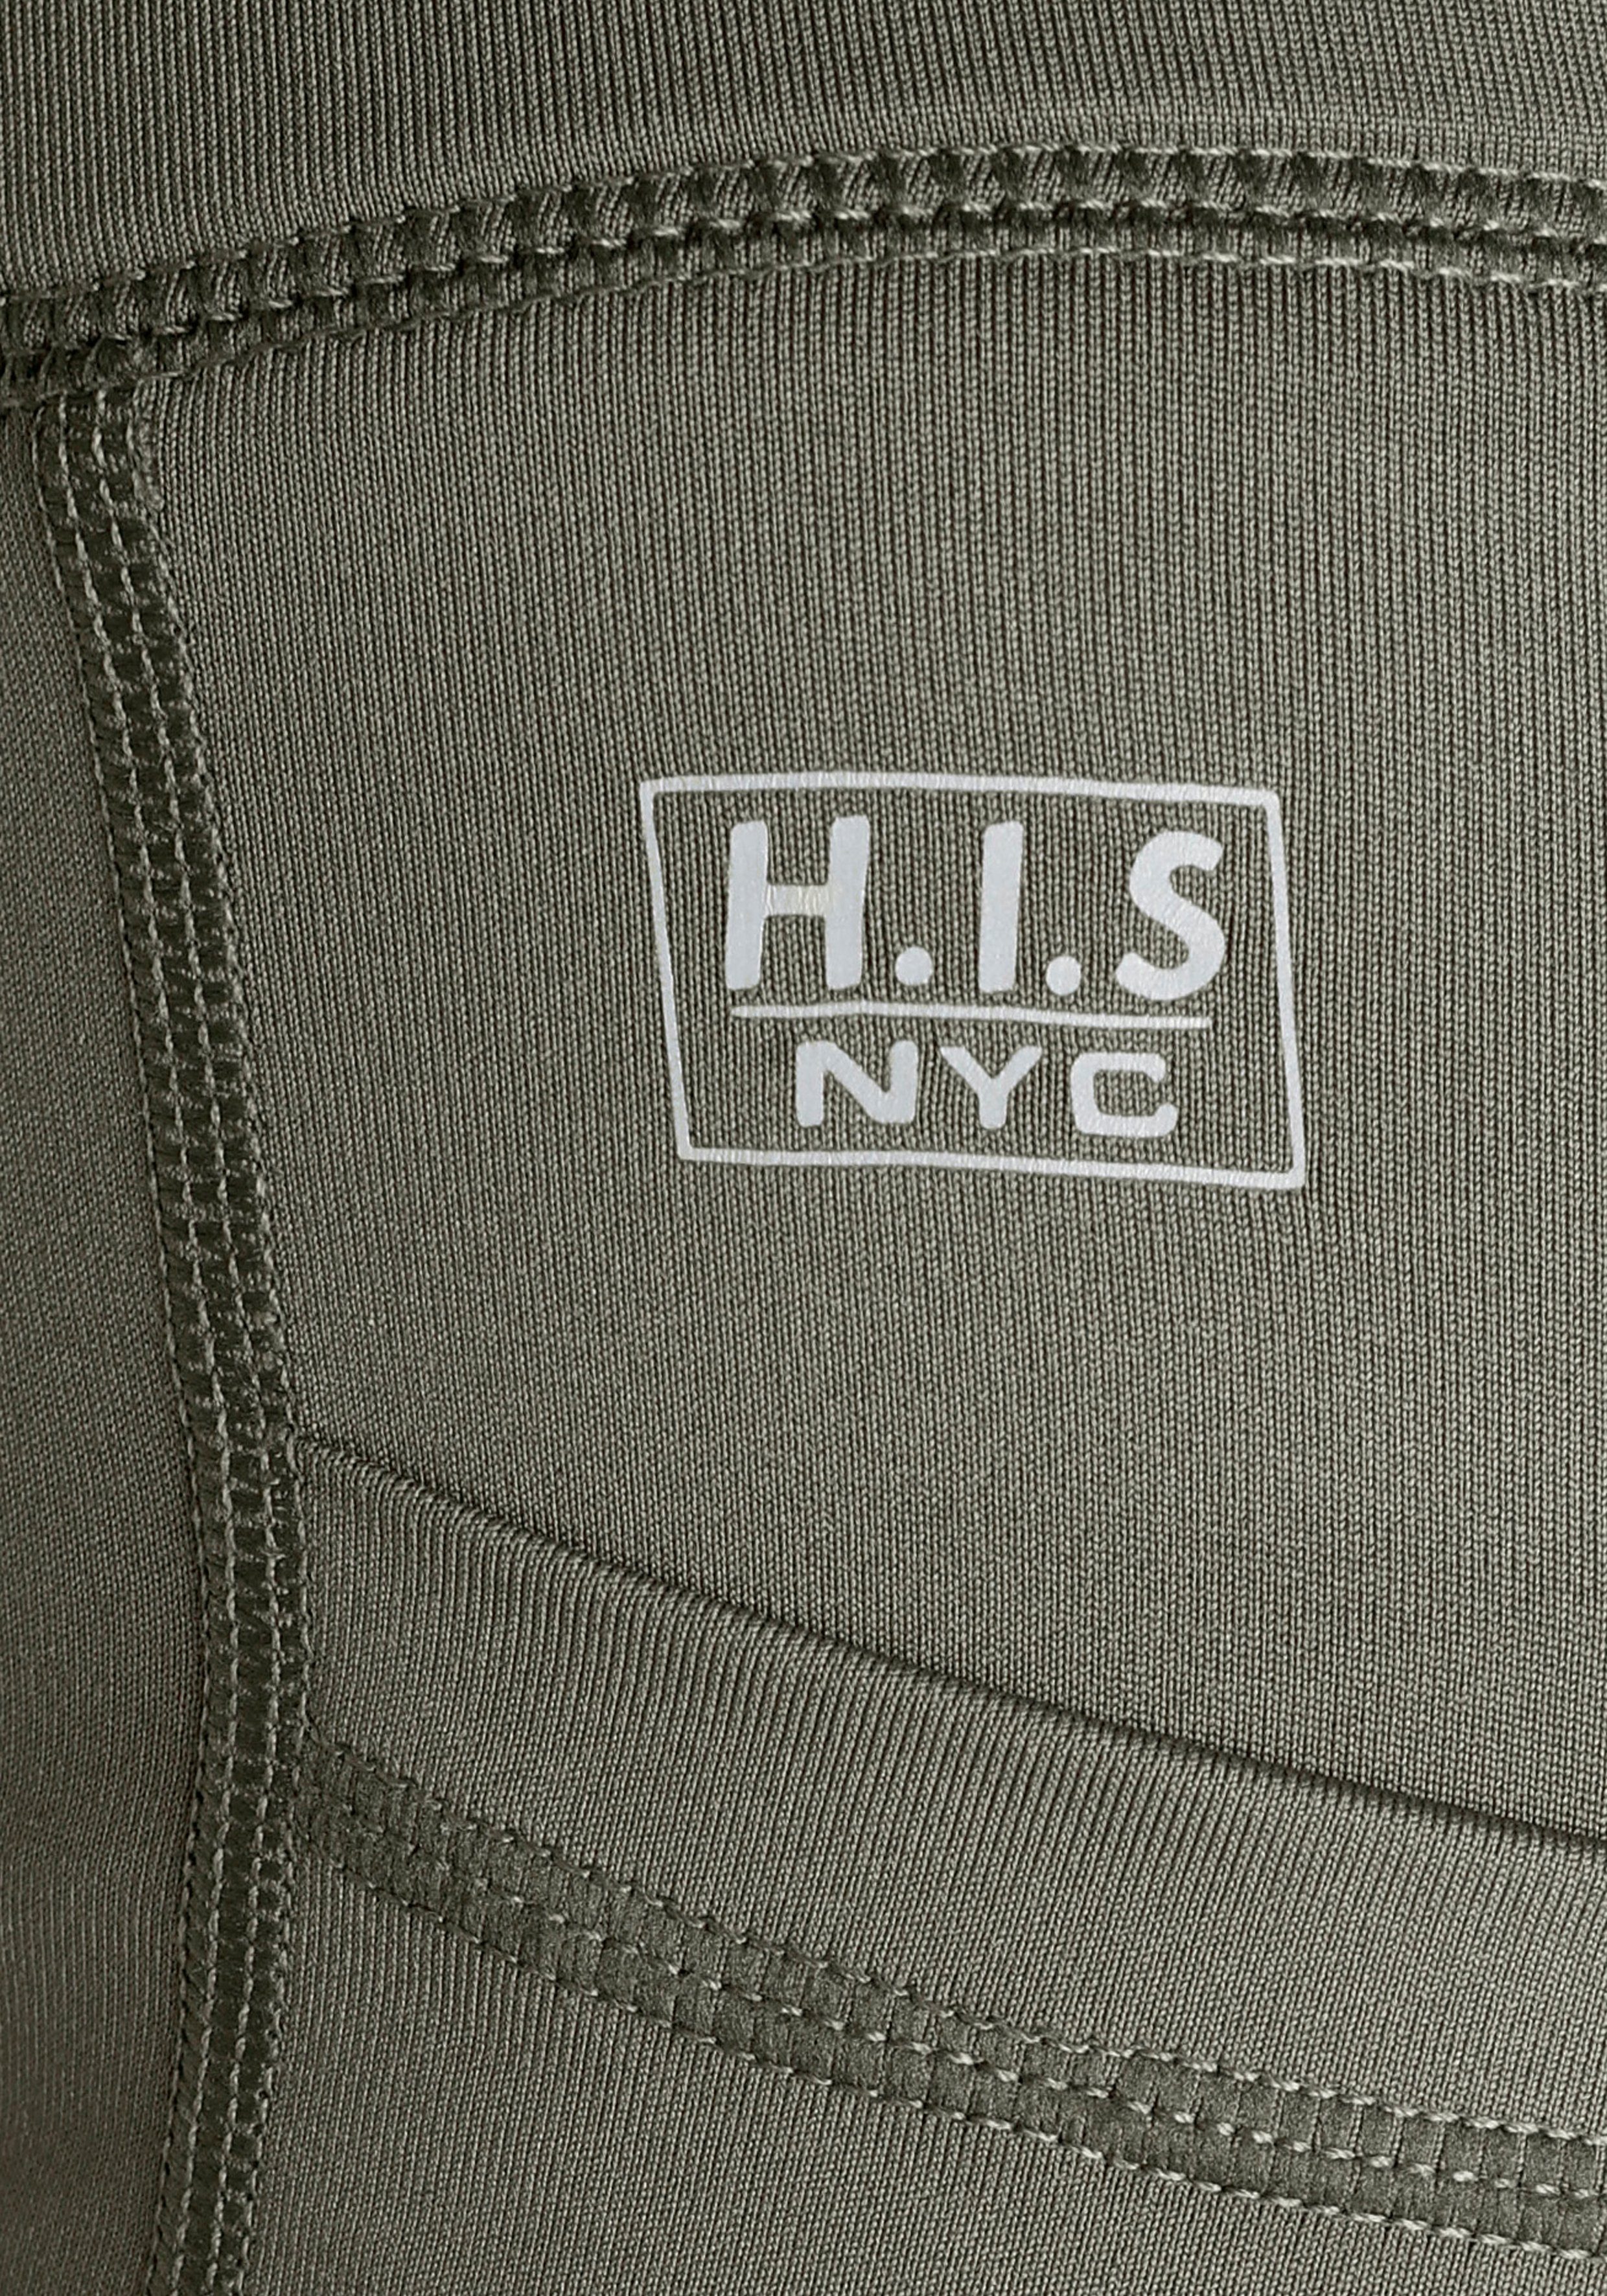 H.I.S Funktionshose mit seitlichen Handy-Taschen khaki